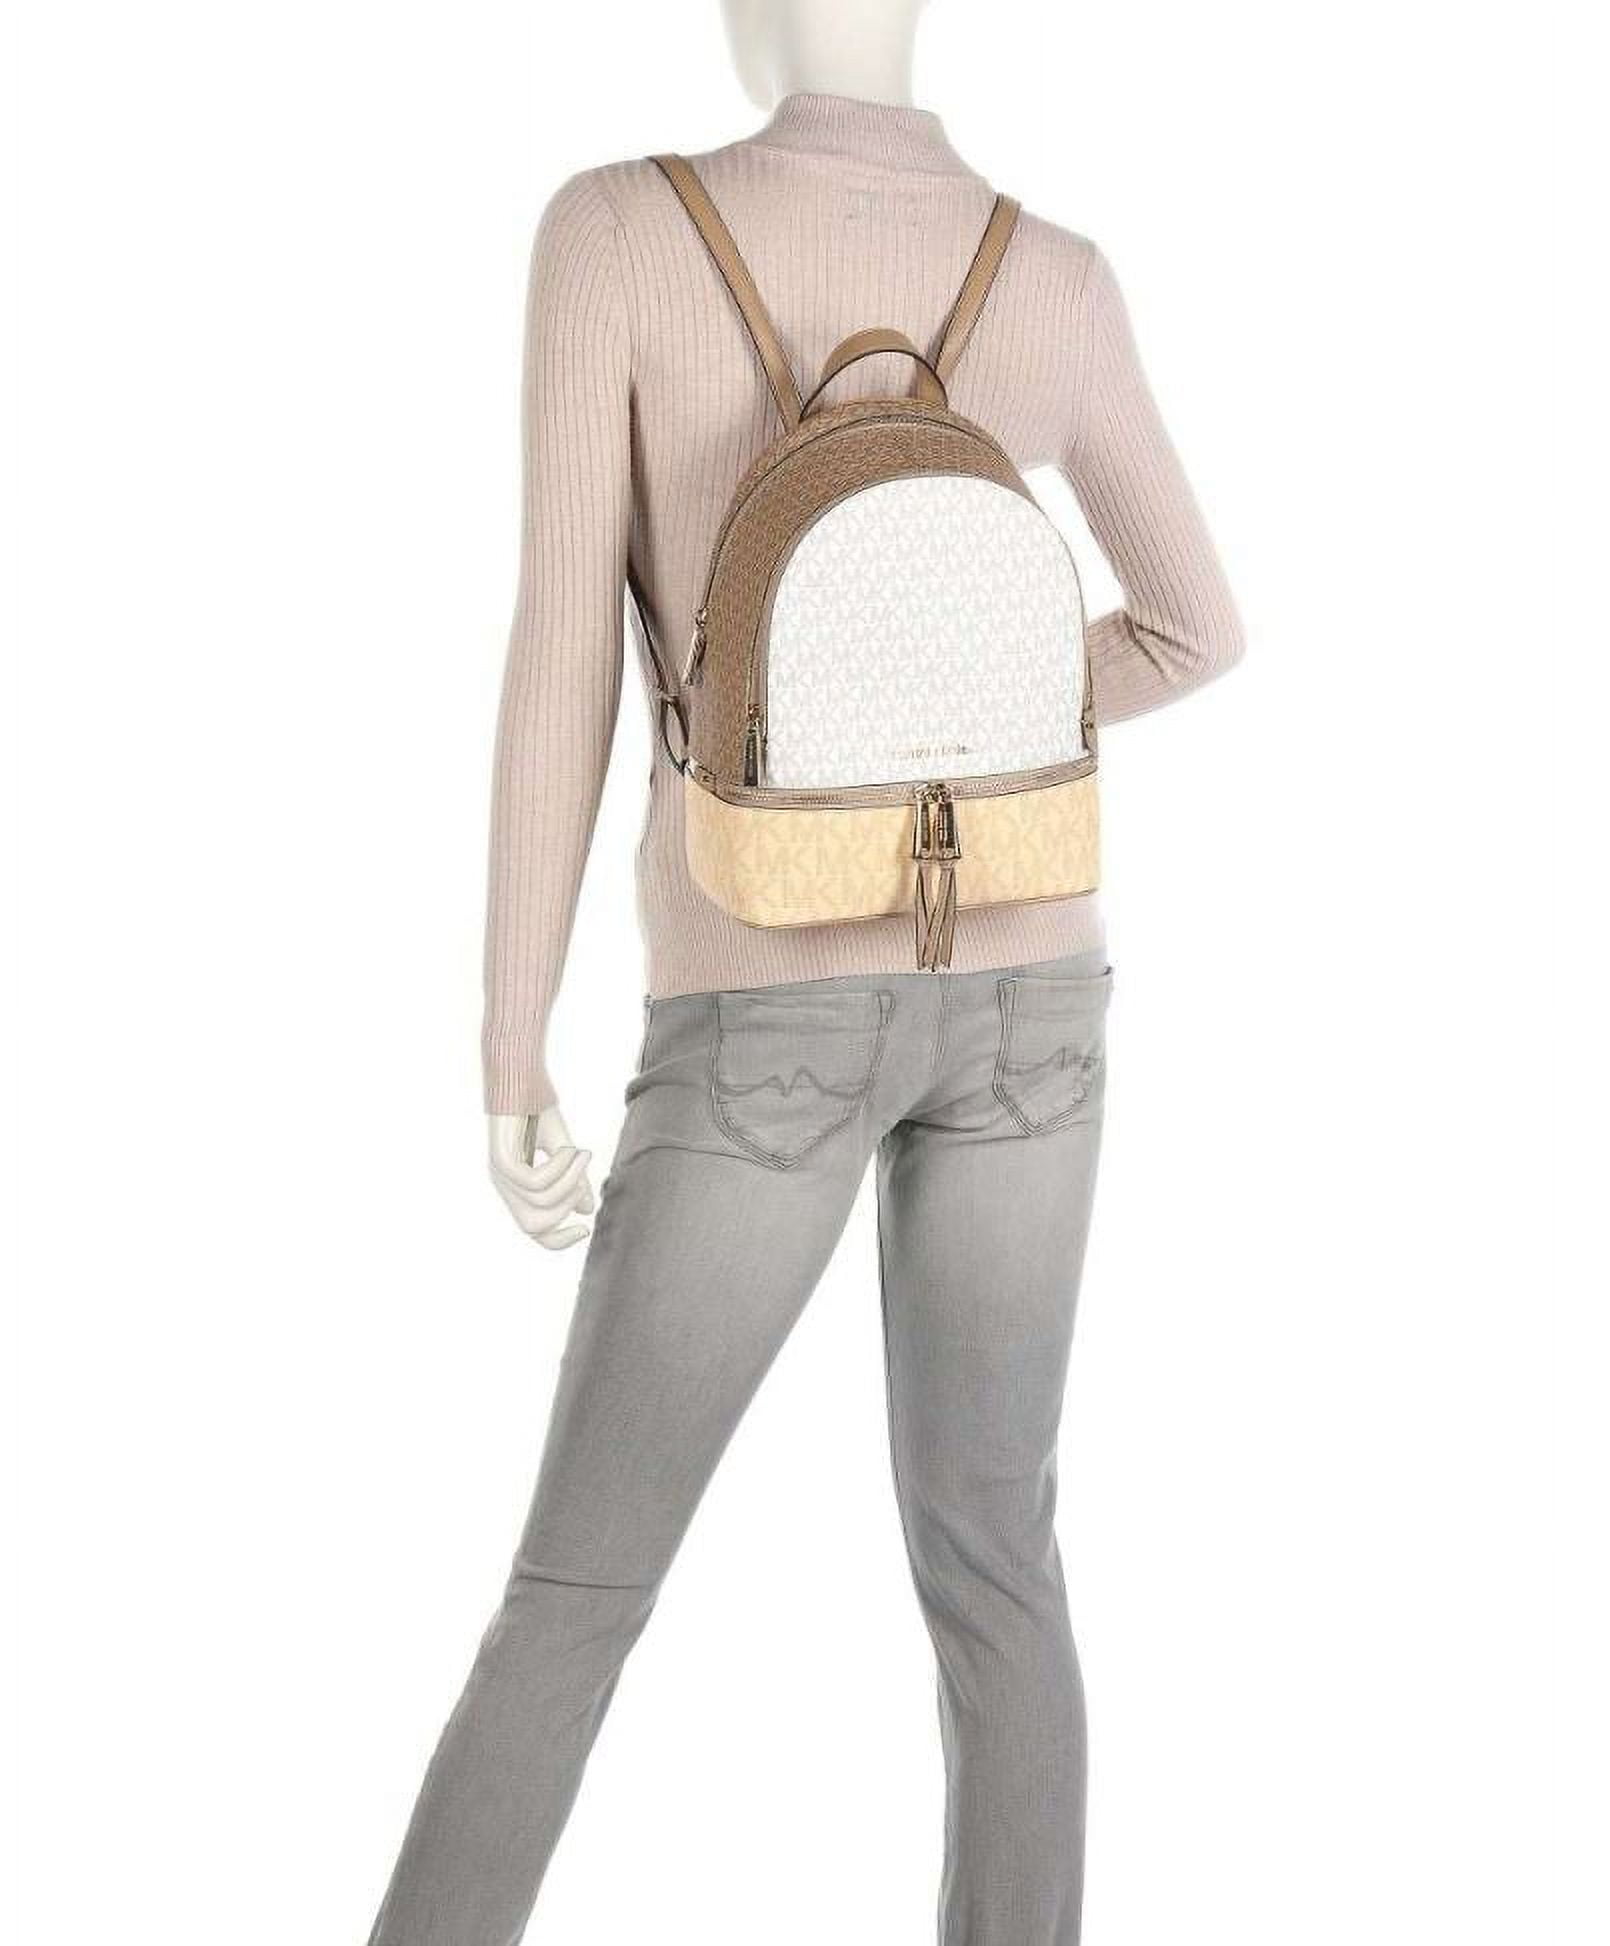 Backpacks Michael Kors - Rhea medium backpack - 30S0GEZB2V636